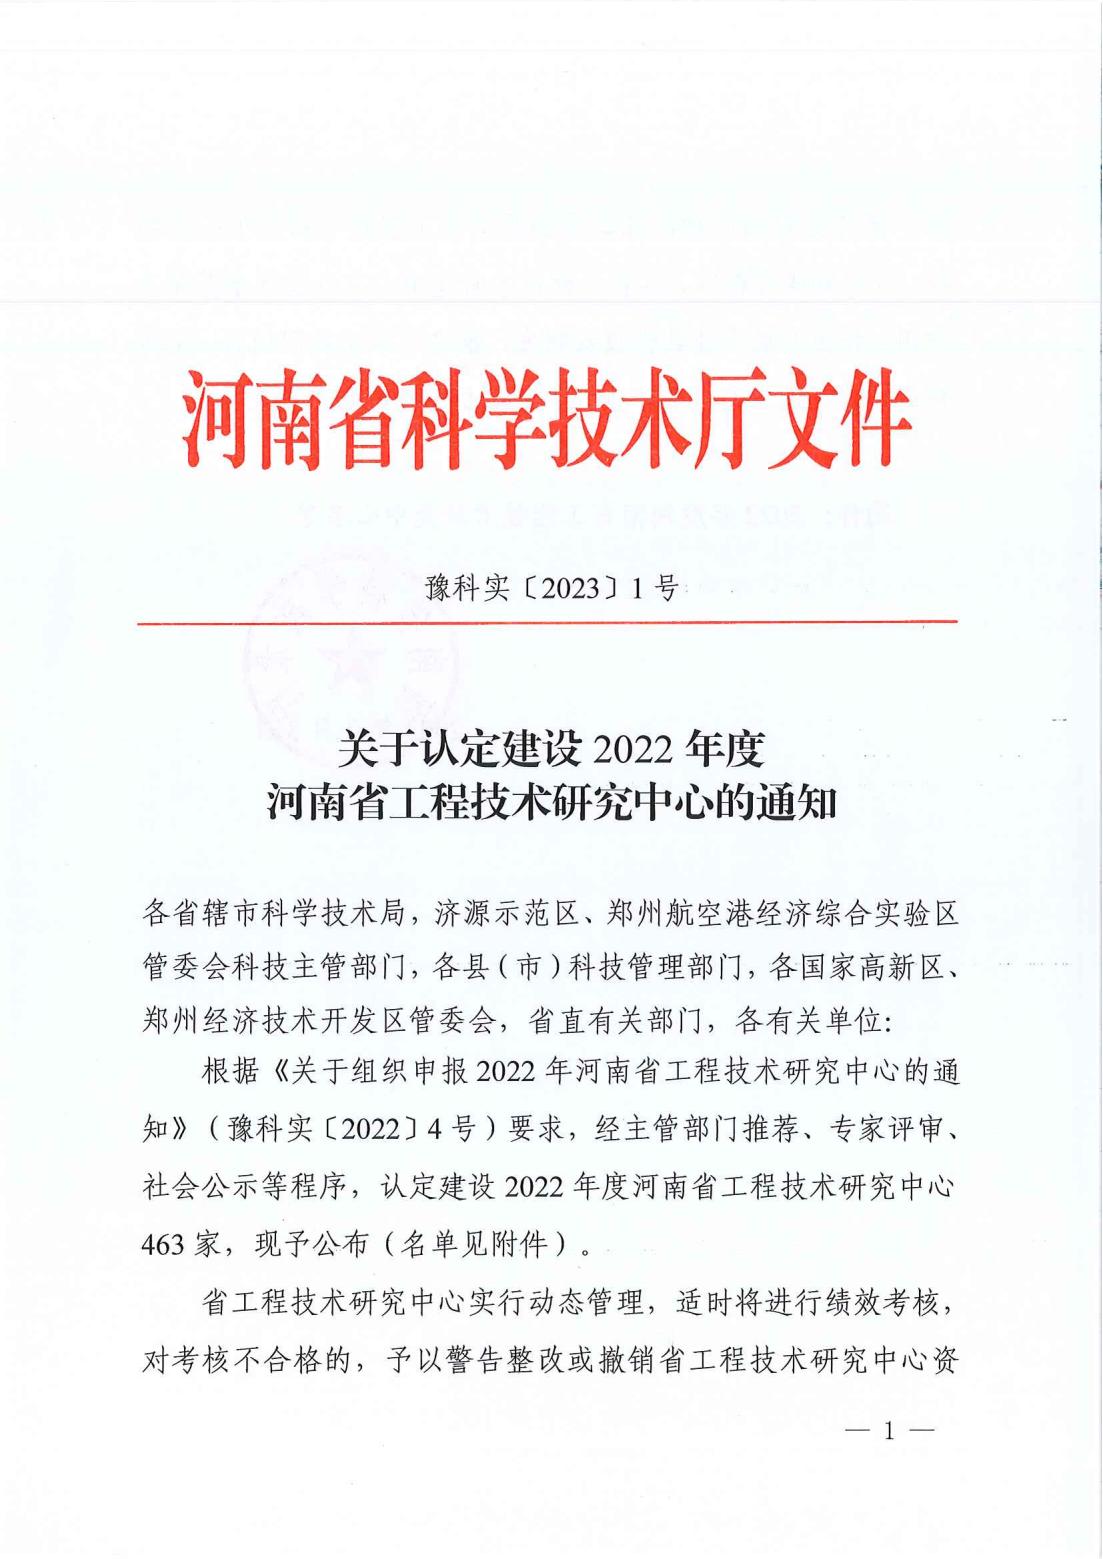 关于认定建设2022年度河南省工程技术研究中心的通知（豫科实〔2023〕1号）_00